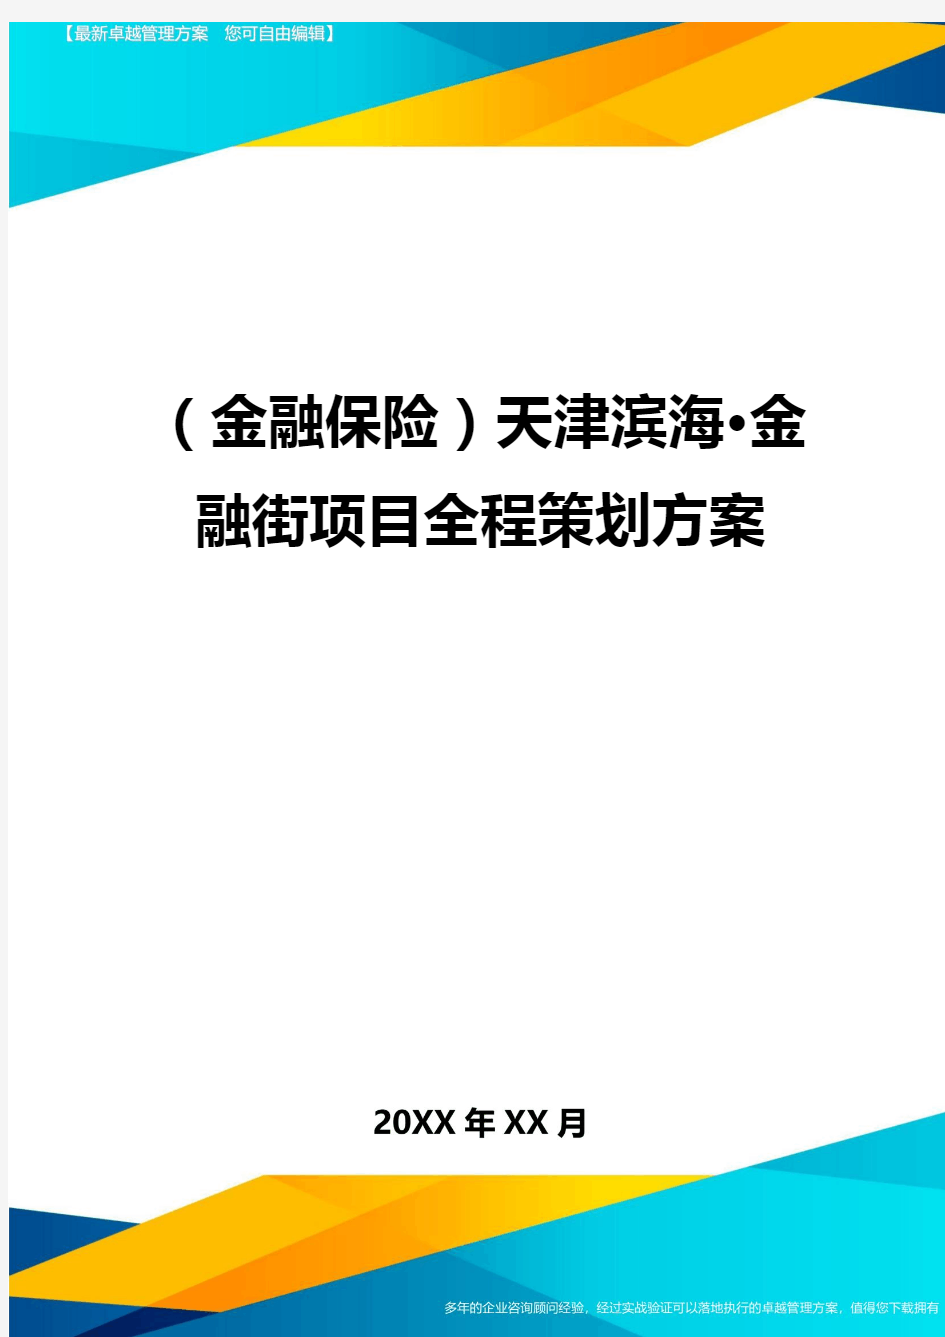 2020年(金融保险)天津滨海·金融街项目全程策划方案